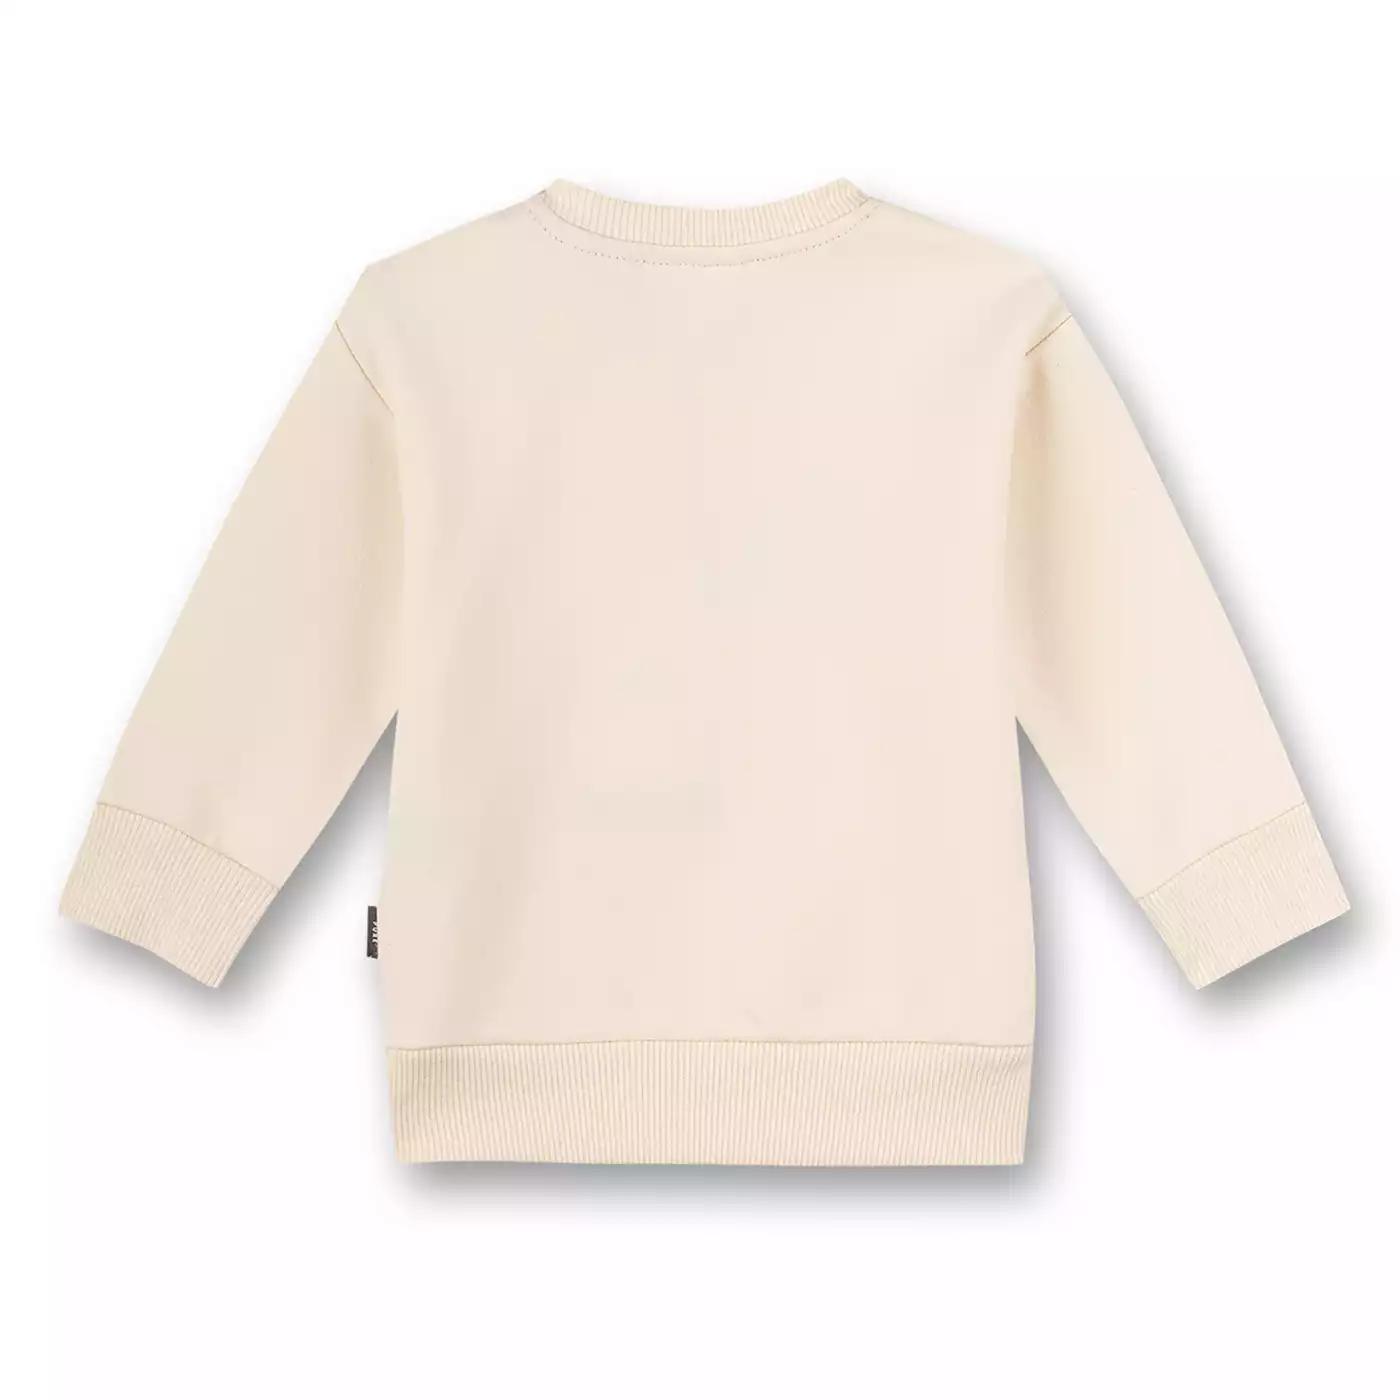 Sweatshirt Pure Dear World Sanetta Weiß 2006580719903 5